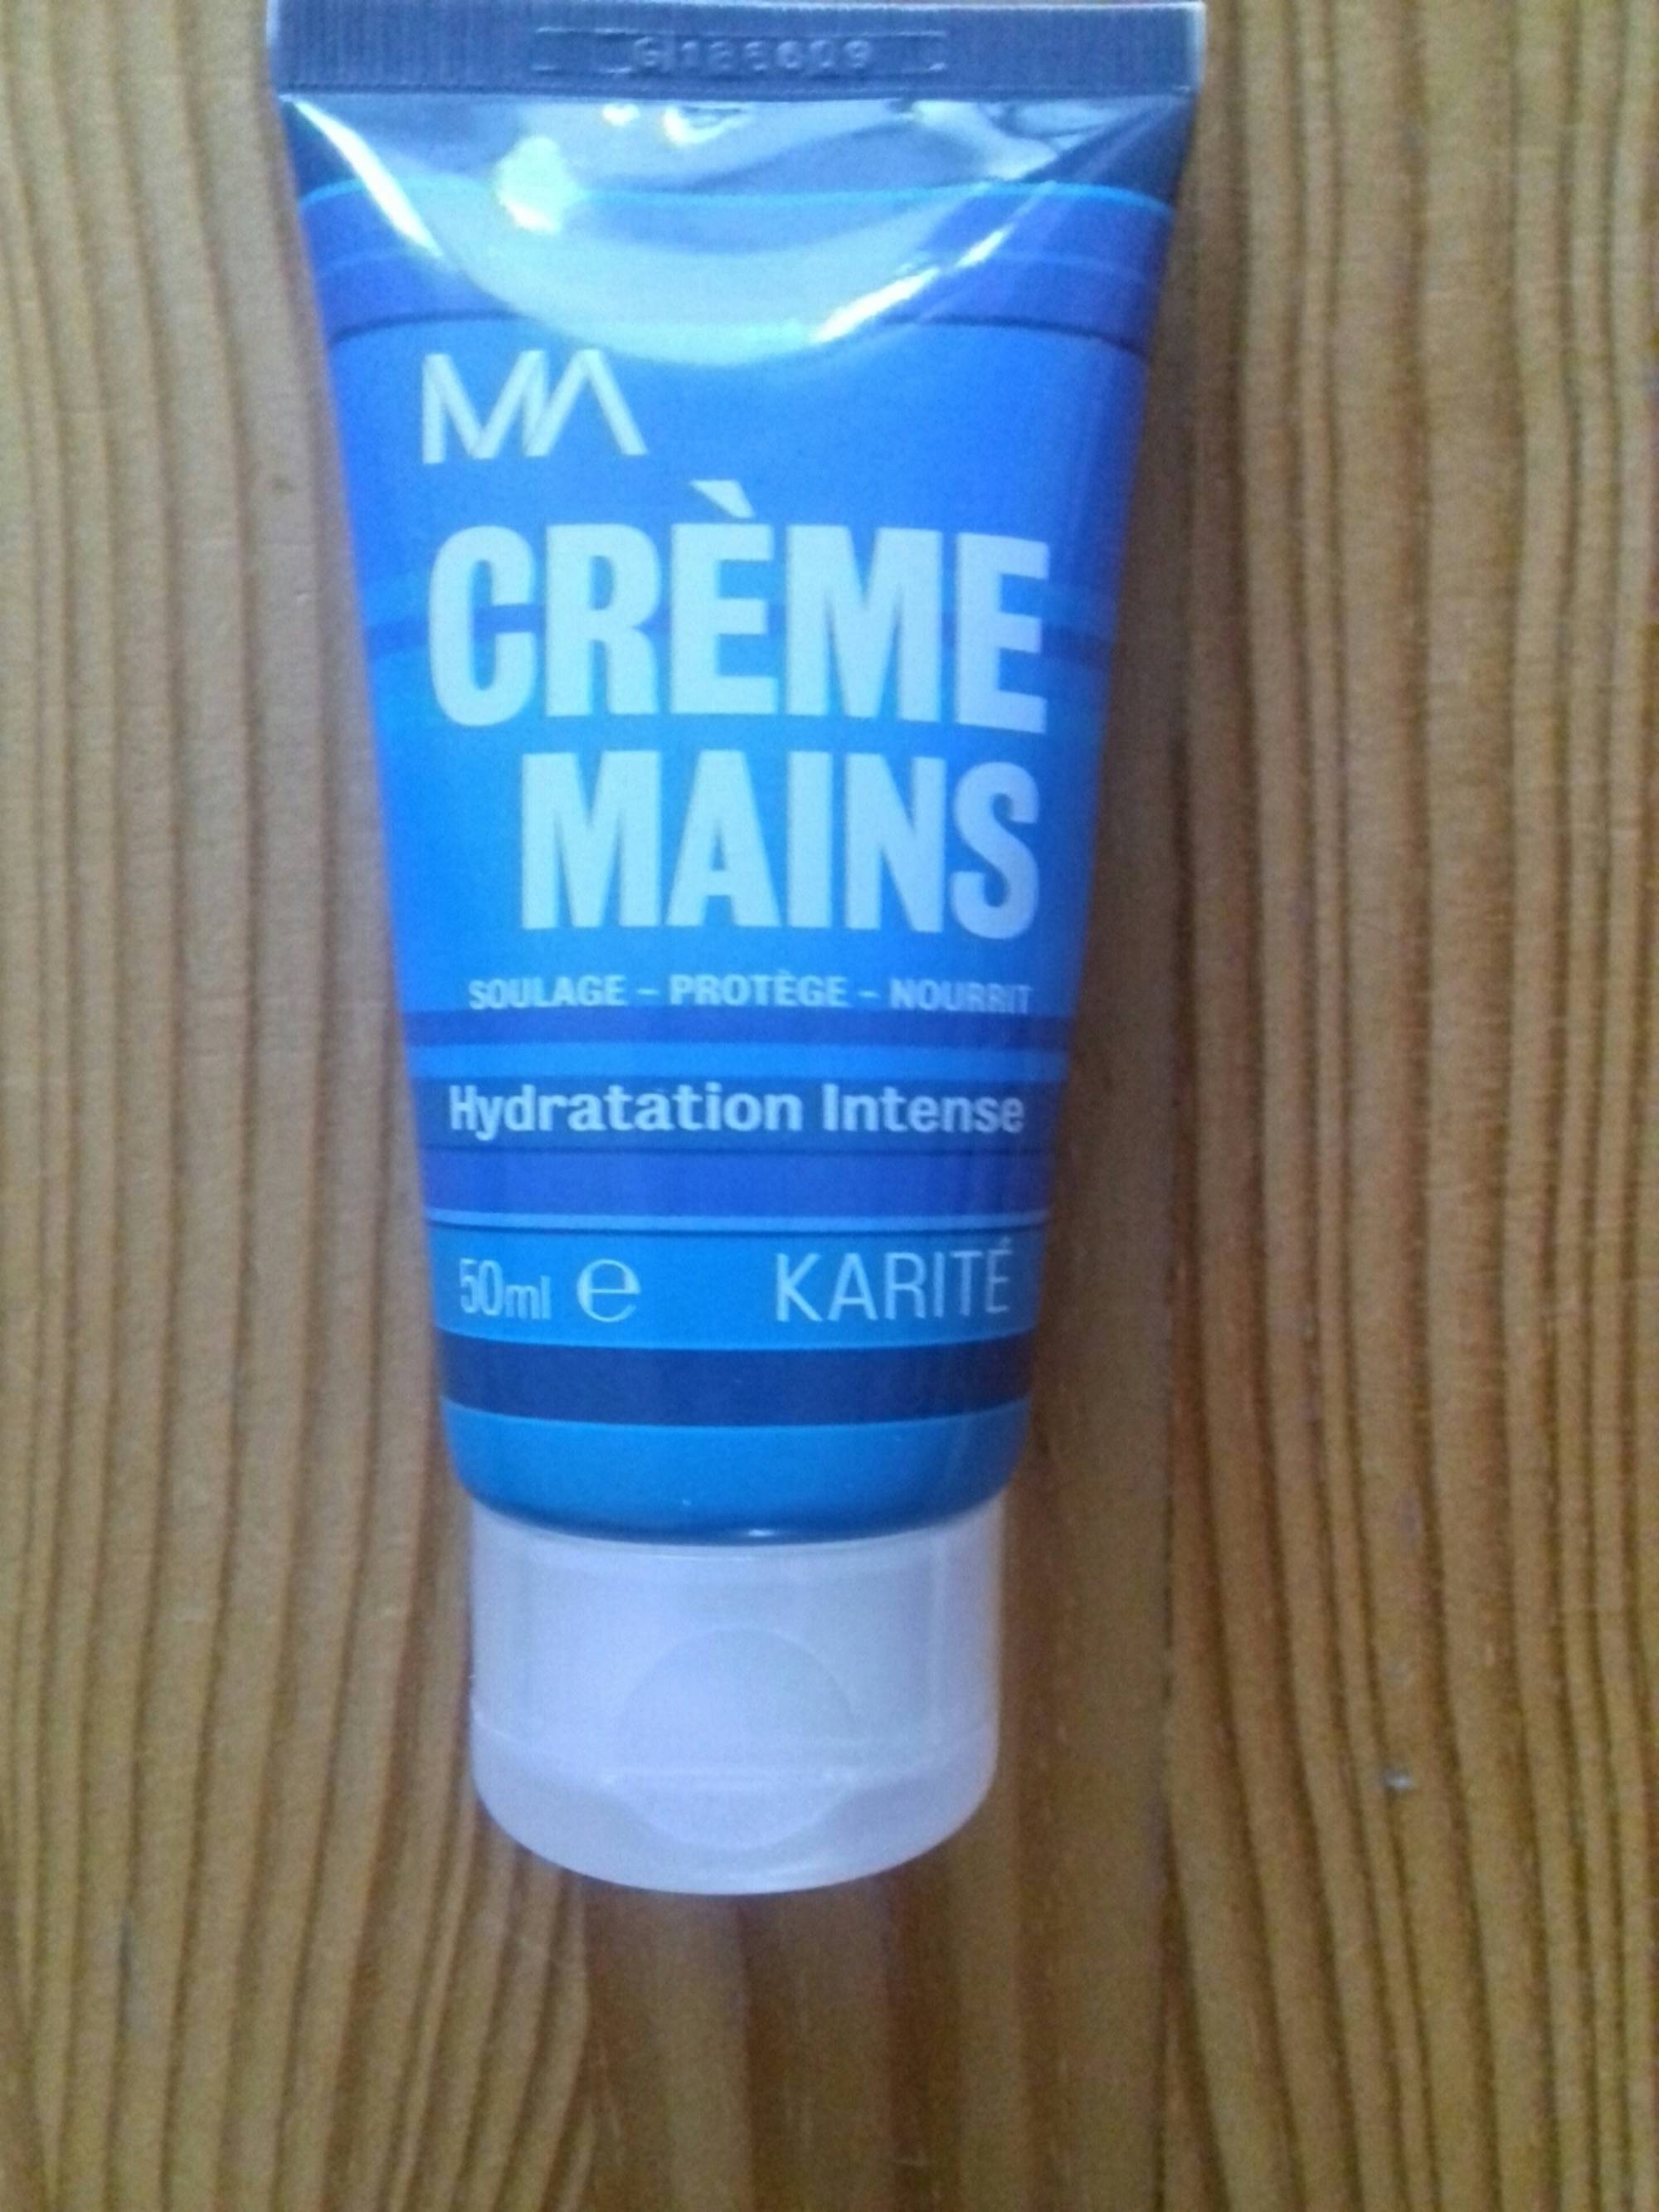 MA - Crème mains hydratation intense au karité